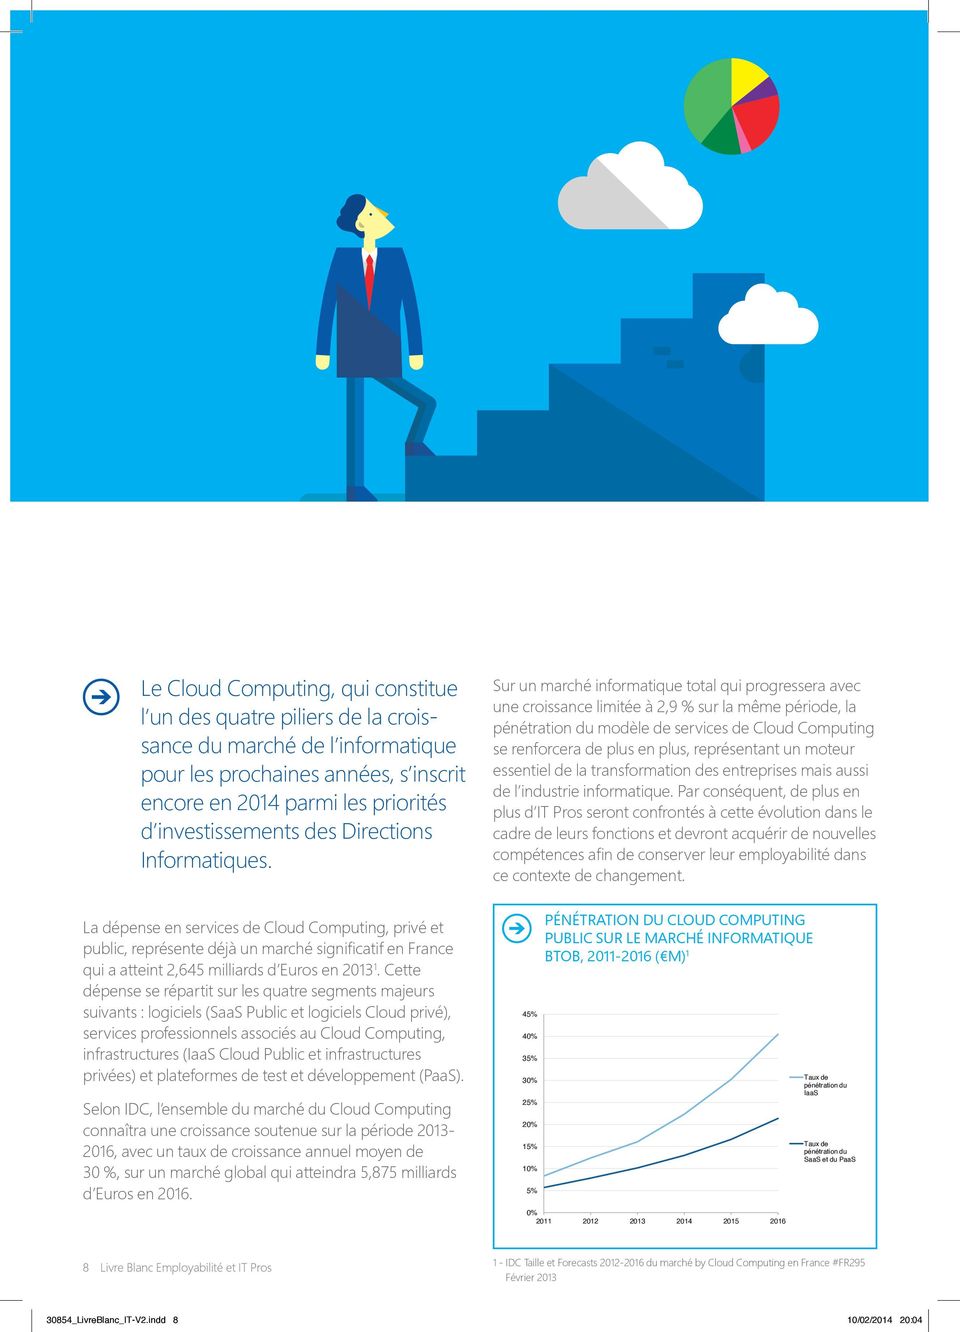 Sur un marché informatique total qui progressera avec une croissance limitée à 2,9 % sur la même période, la pénétration du modèle de services de Cloud Computing se renforcera de plus en plus,